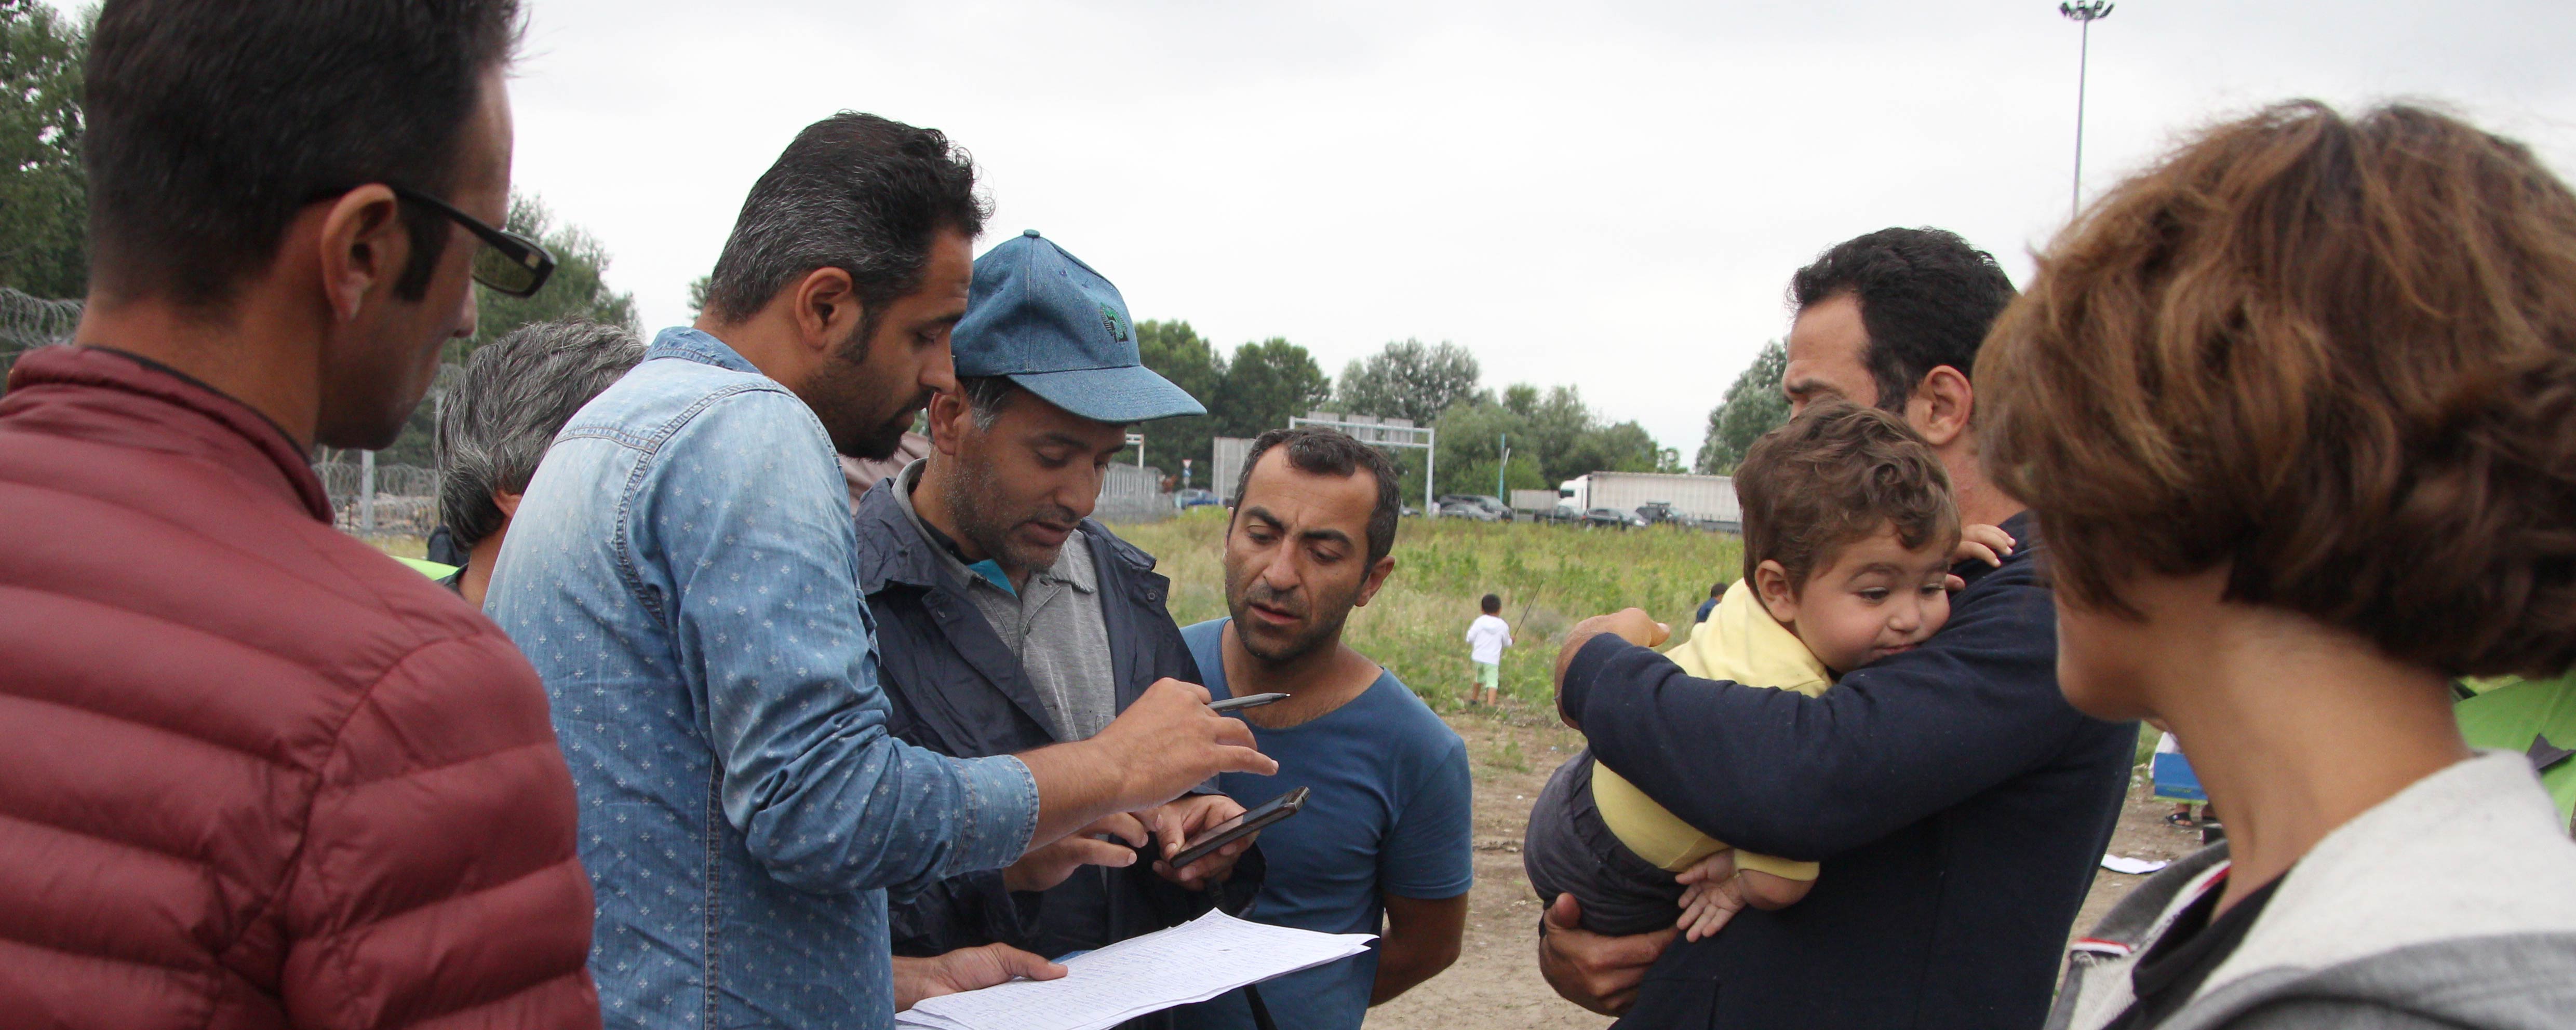 Az UNHCR sürgeti, hogy Európa vegye ki jobban a részét a szíriai menekültek megsegítéséből